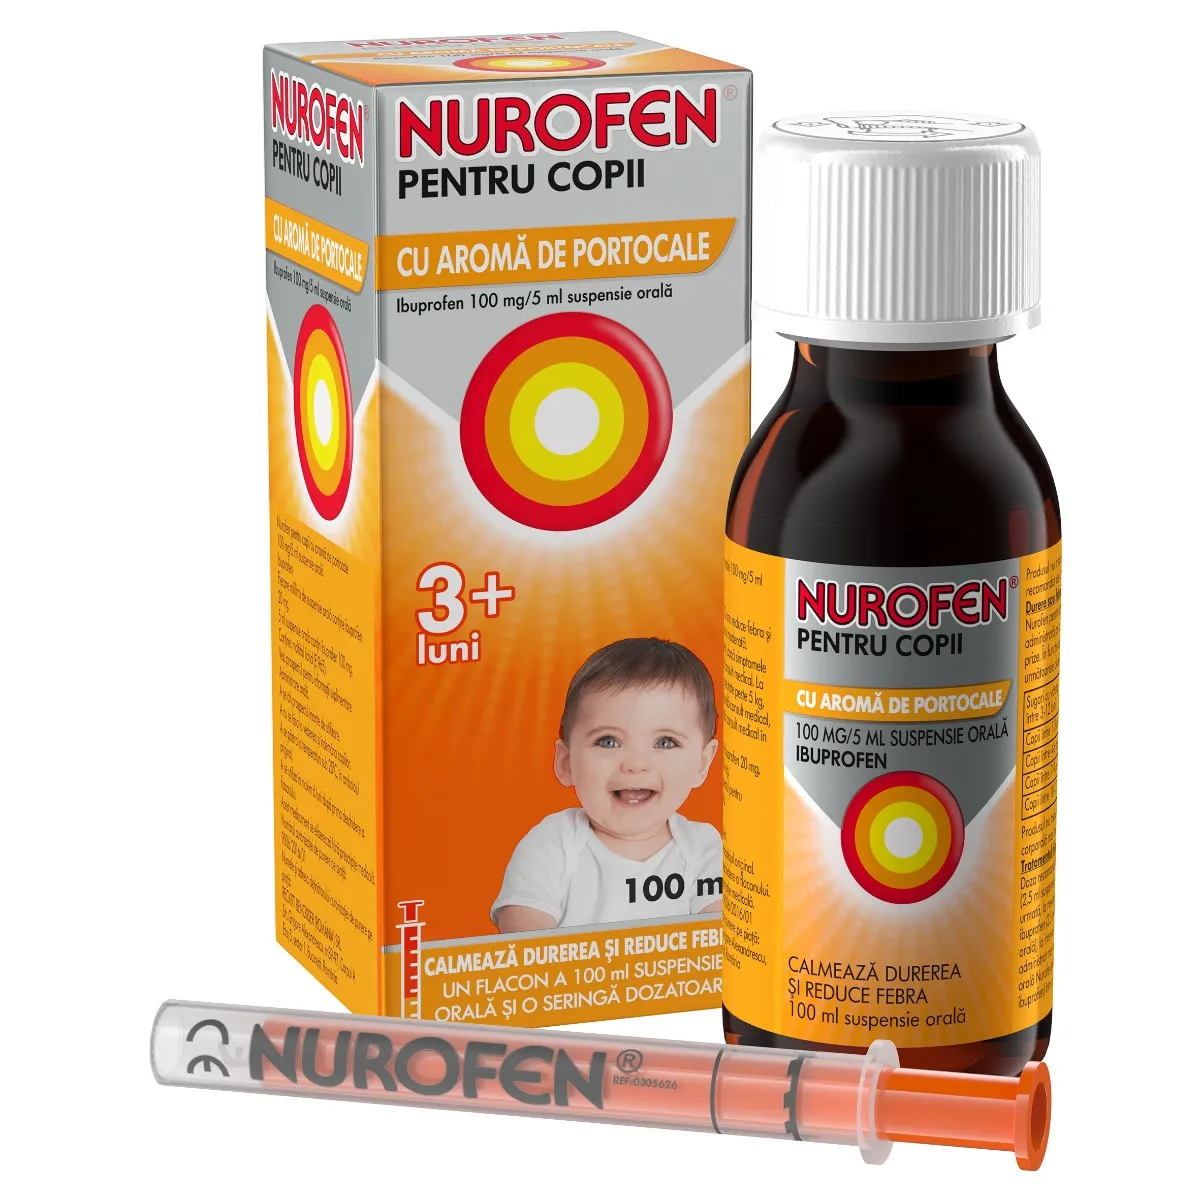 Nurofen pentru copii cu aroma de portocale 100 mg/5 ml, 100ml, Reckitt Benckiser